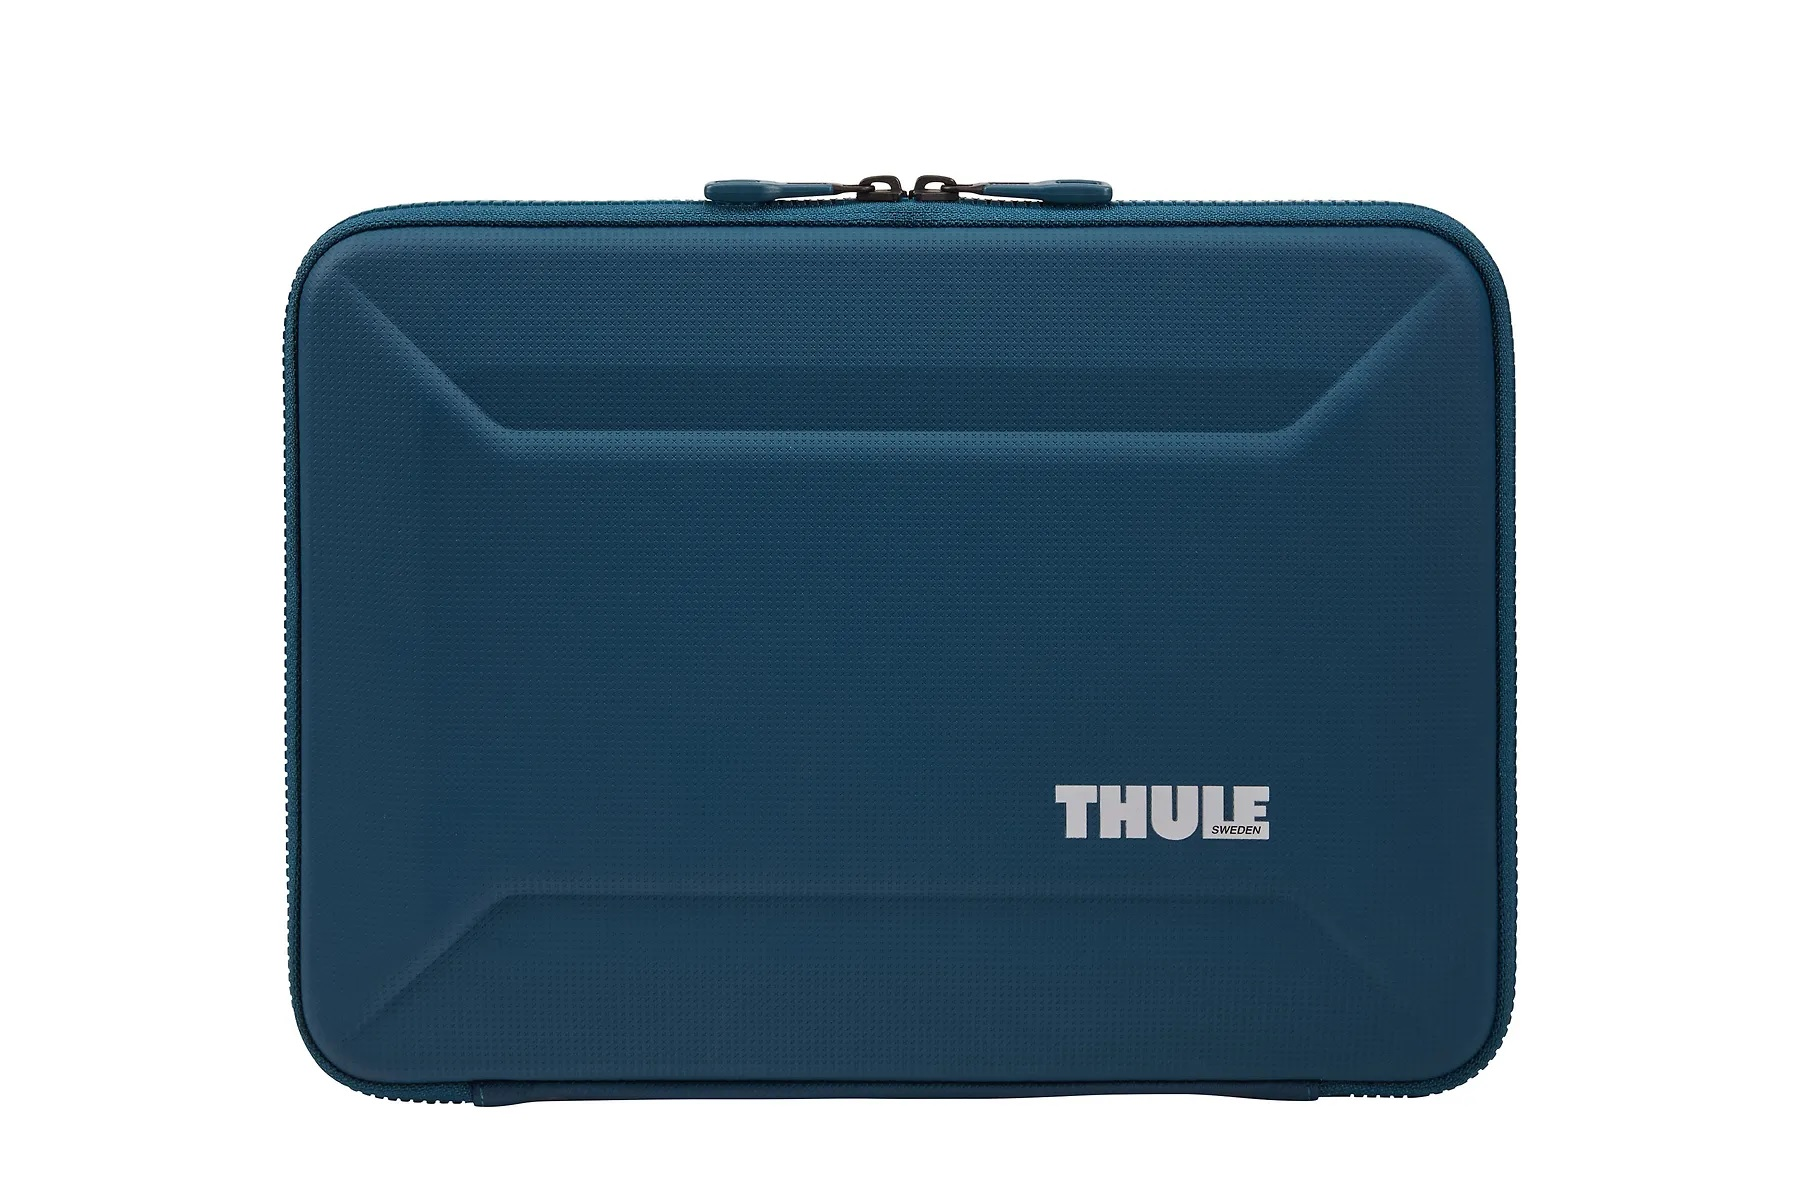 THULE 268202 Notebooktasche Reisekoffer Universal- Polyurethan, blau für